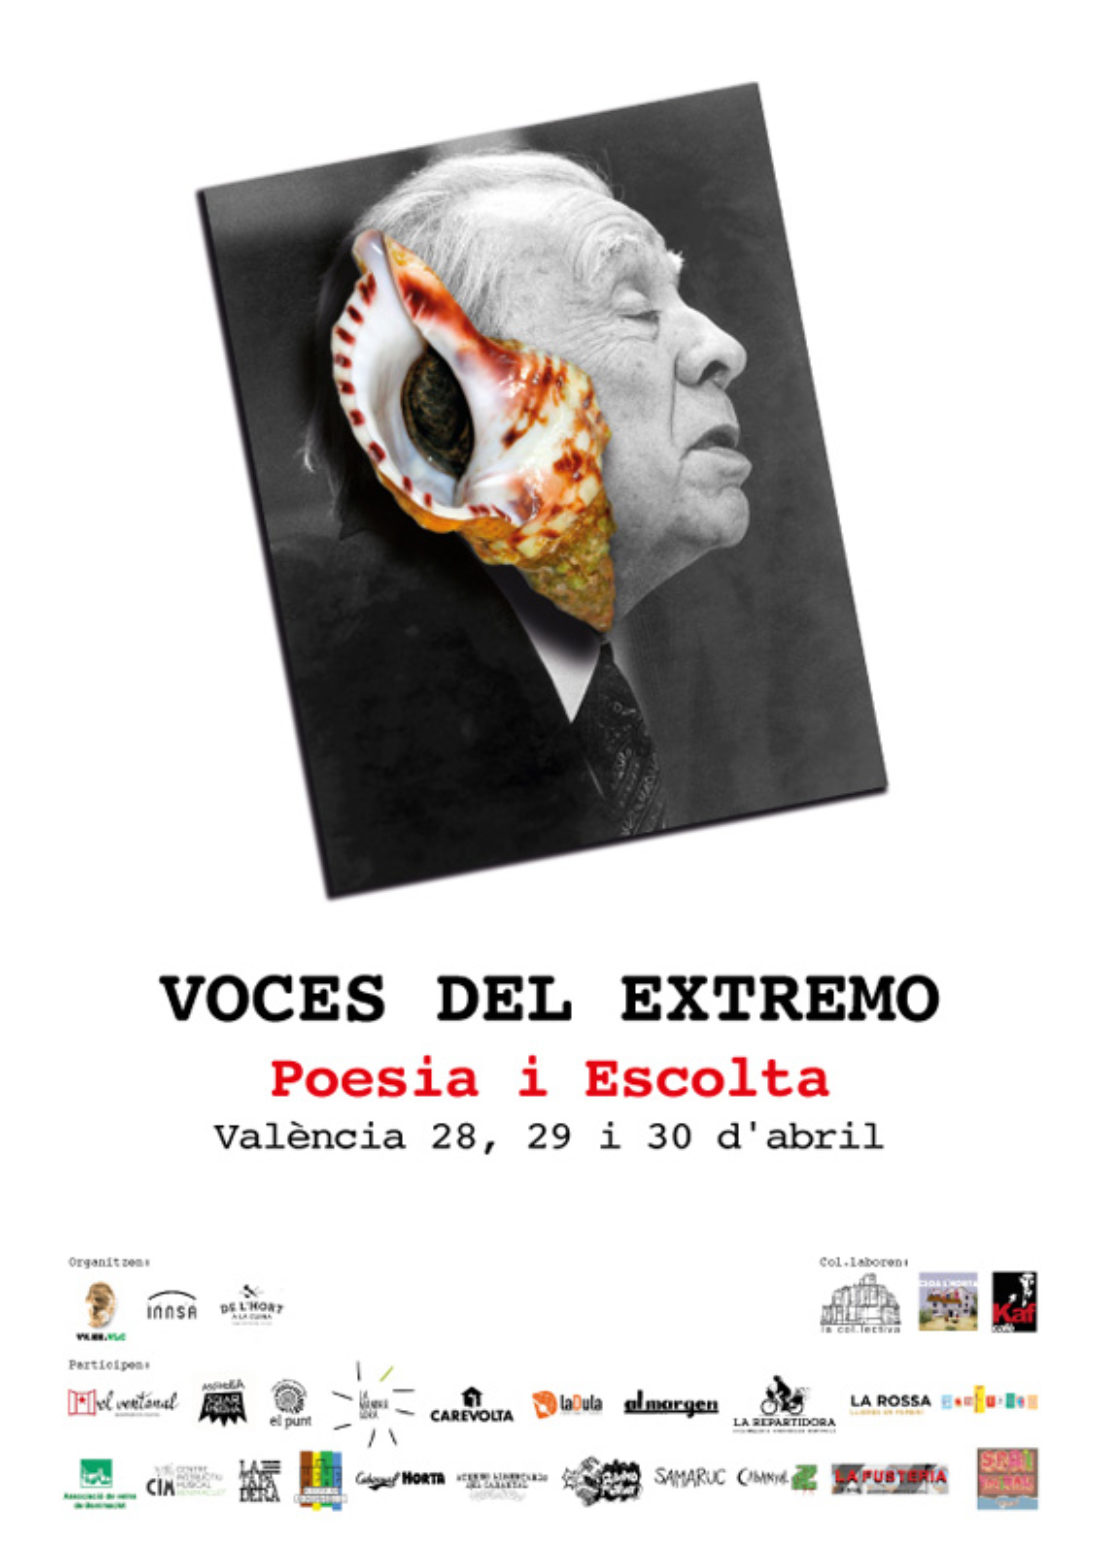 Encuentro Voces del Extremo Valencia 2017  (28, 29 y 30 de abril)